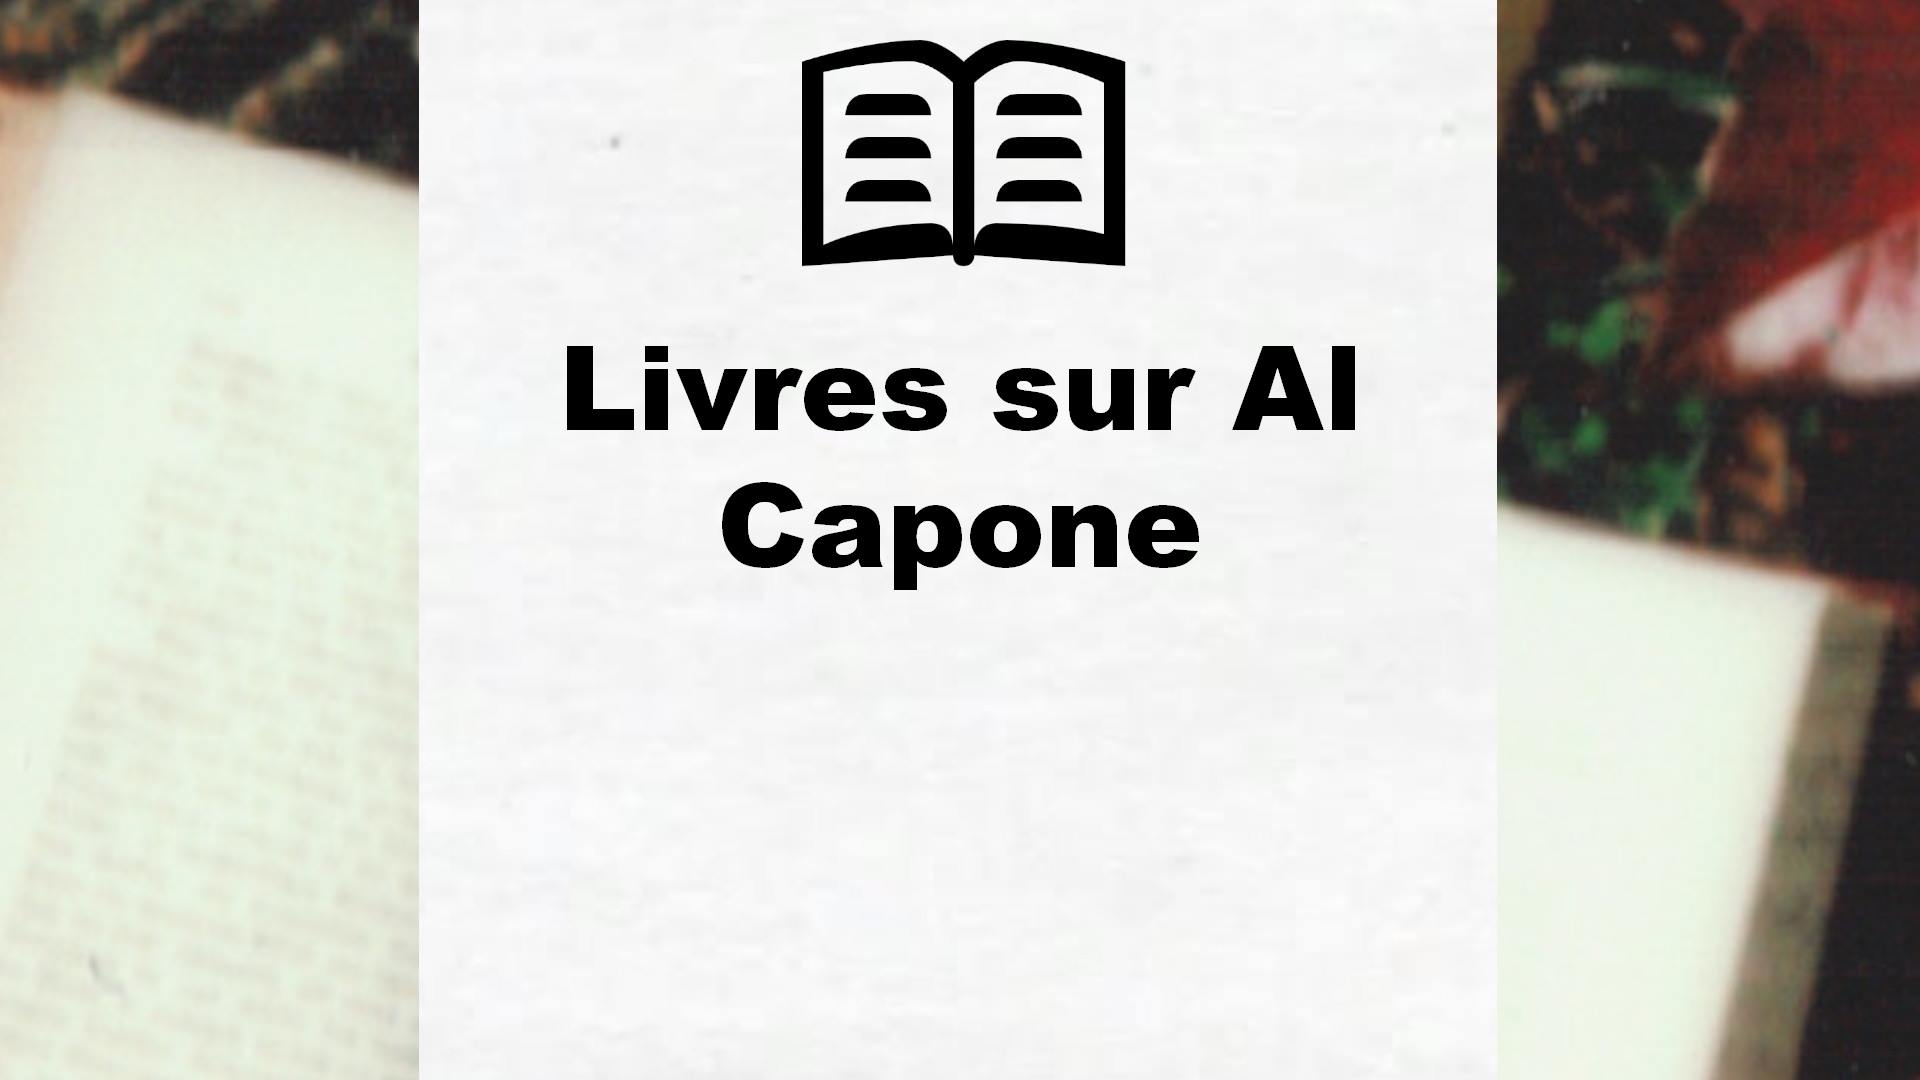 Livres sur Al Capone